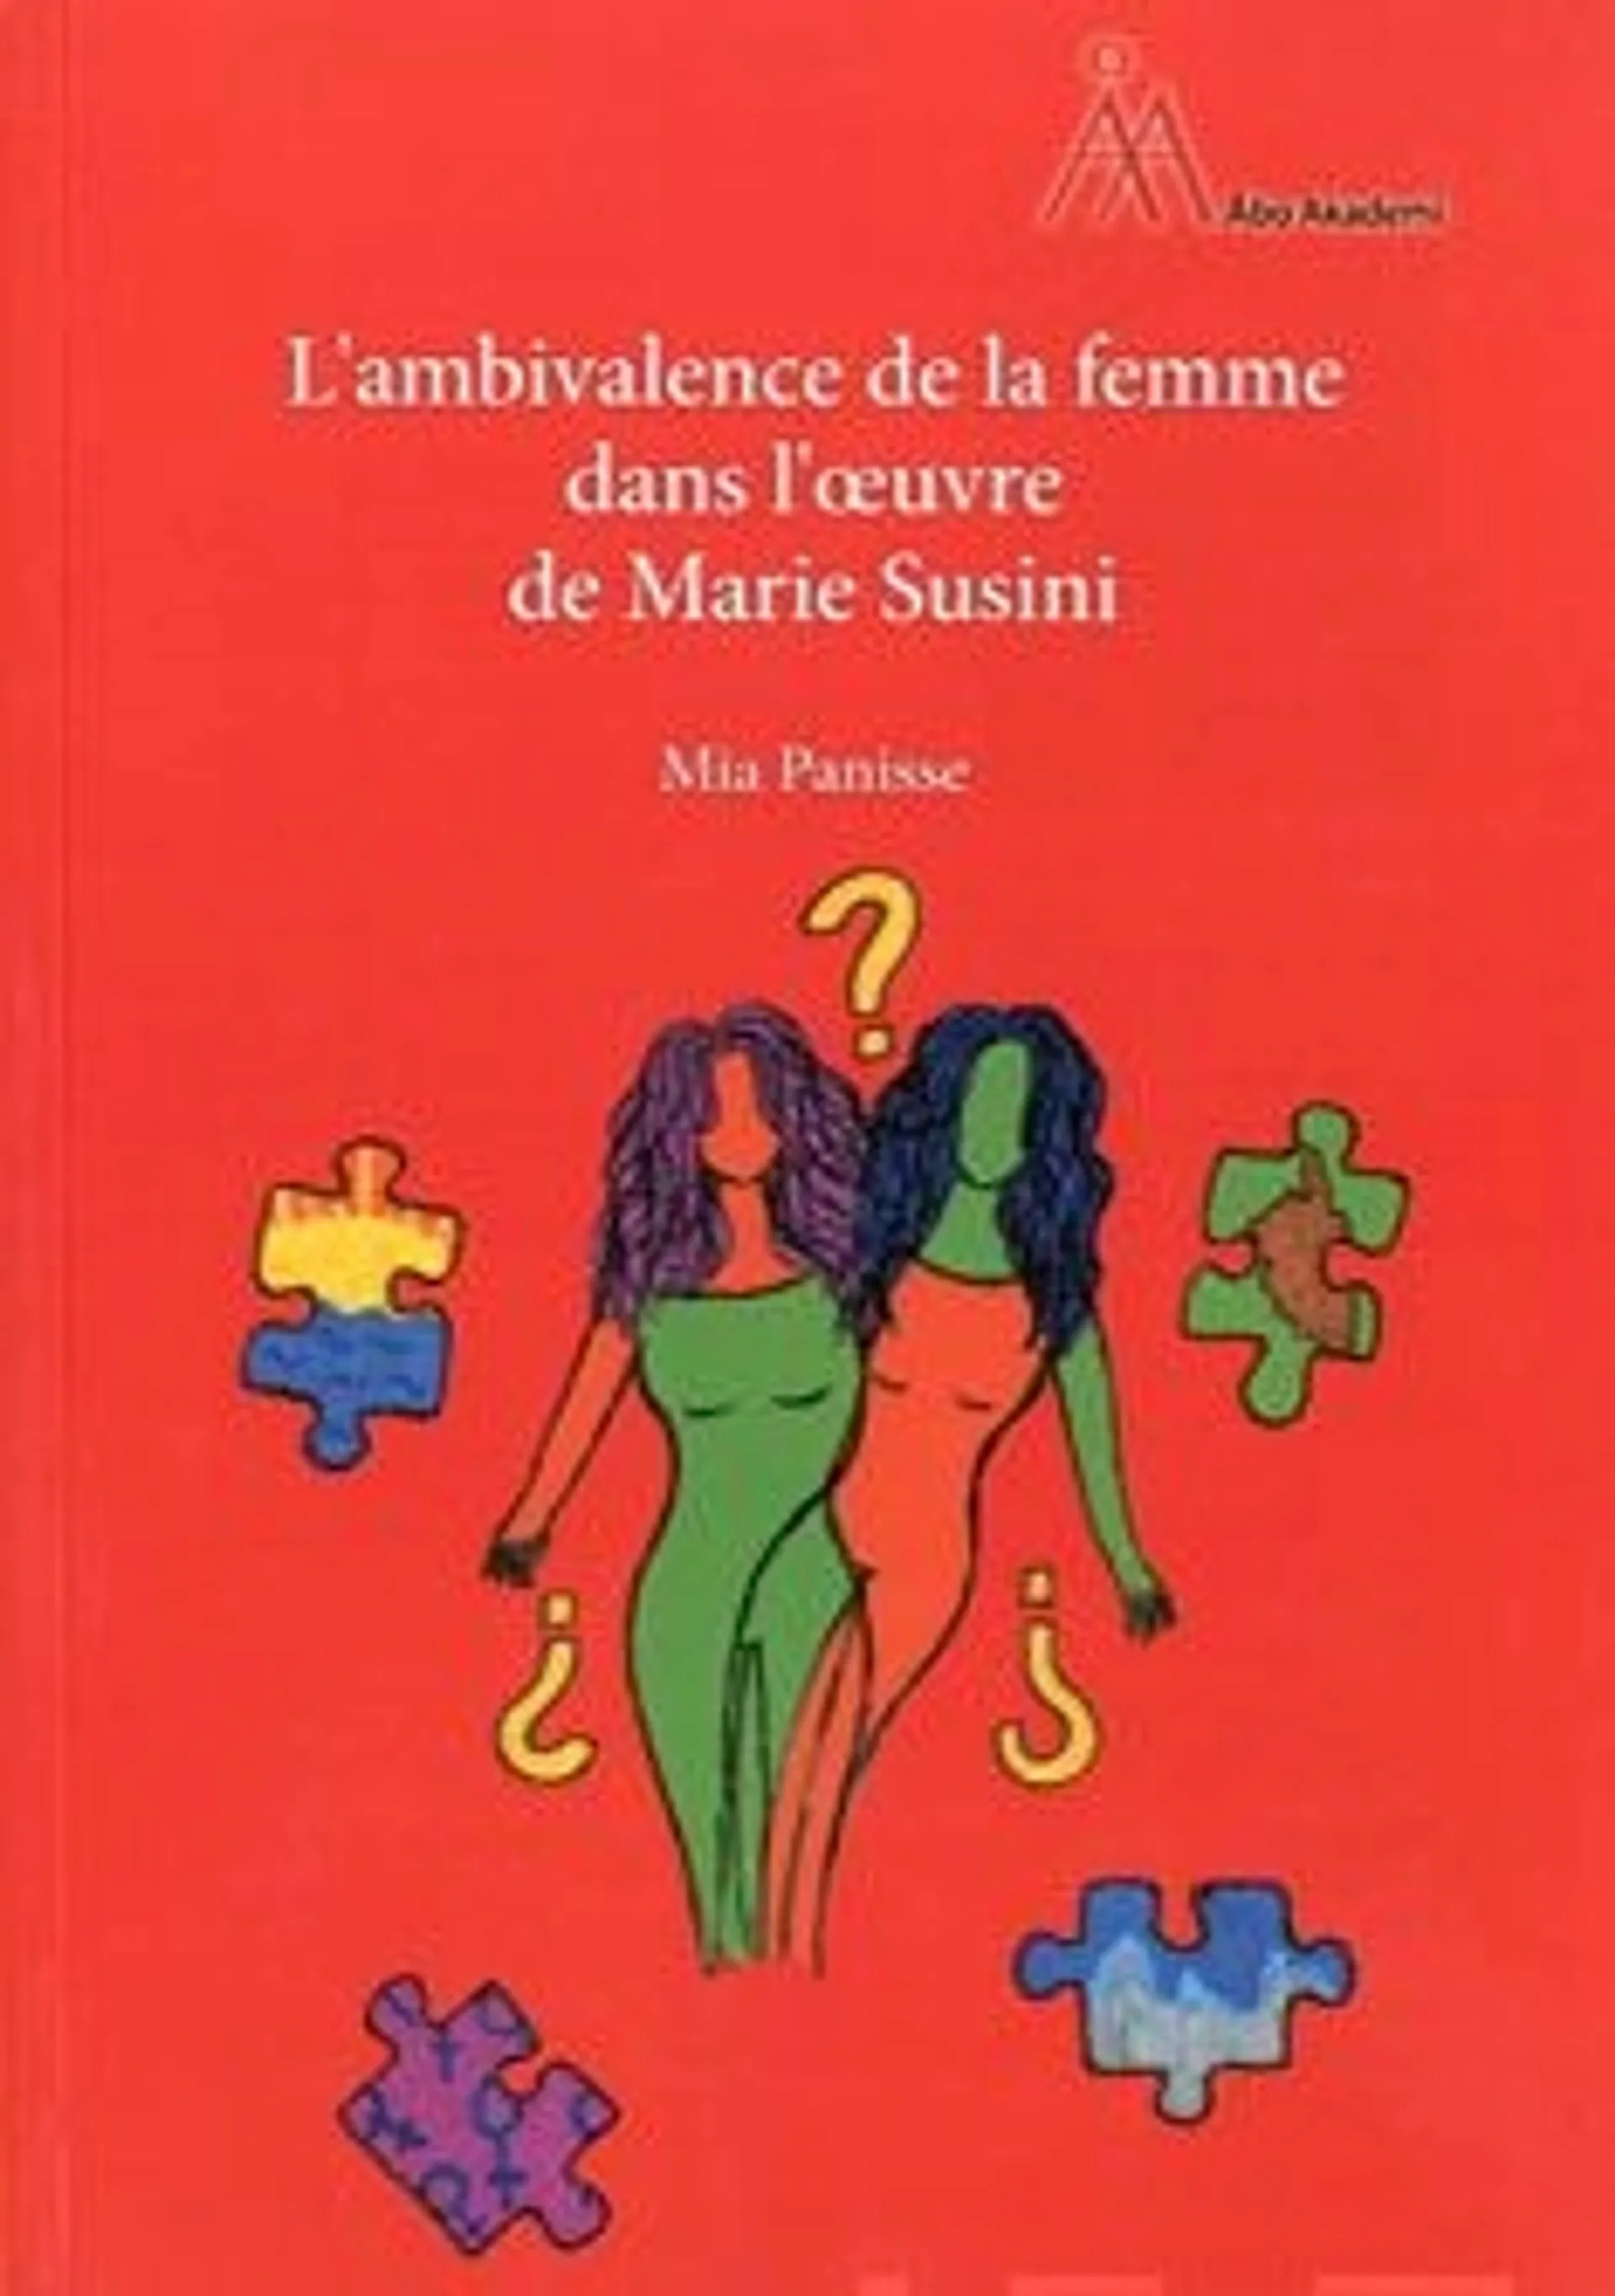 Panisse, L'ambivalence de la femme dans l'oeuvre de Marie Susini